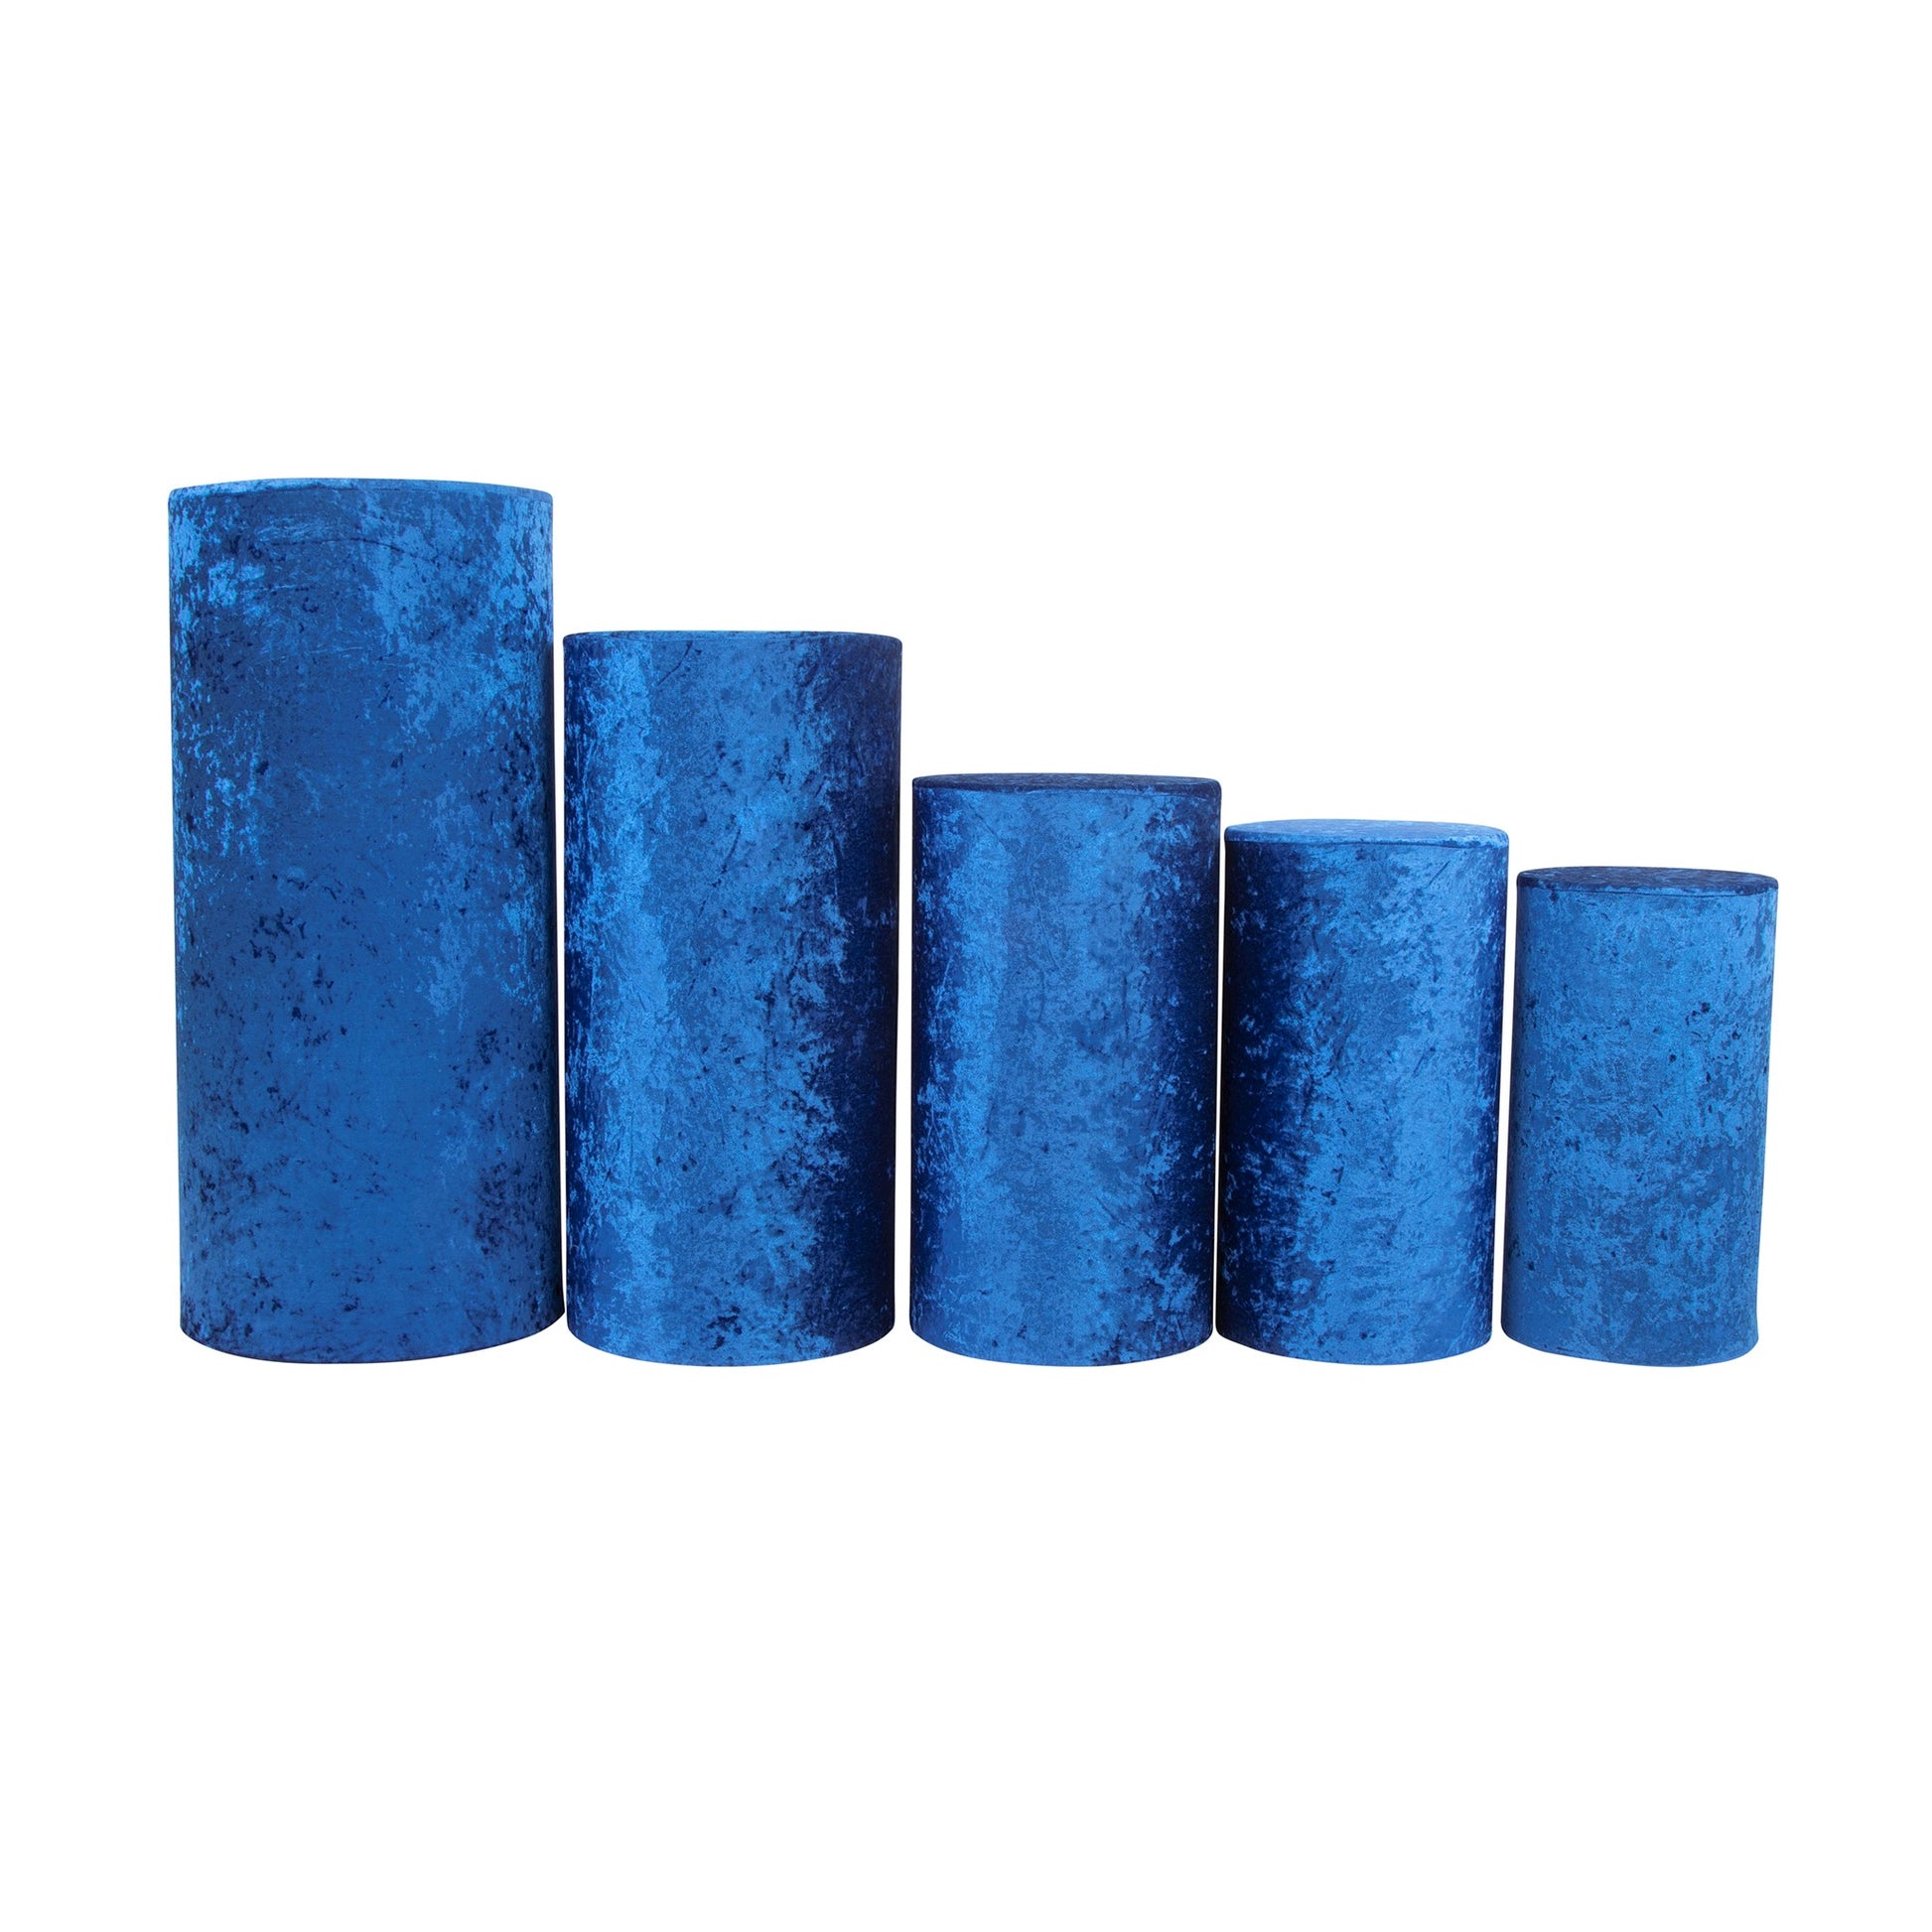 Velvet Covers for Metal Cylinder Pedestal Stands 5 pcs/set - Royal Blue